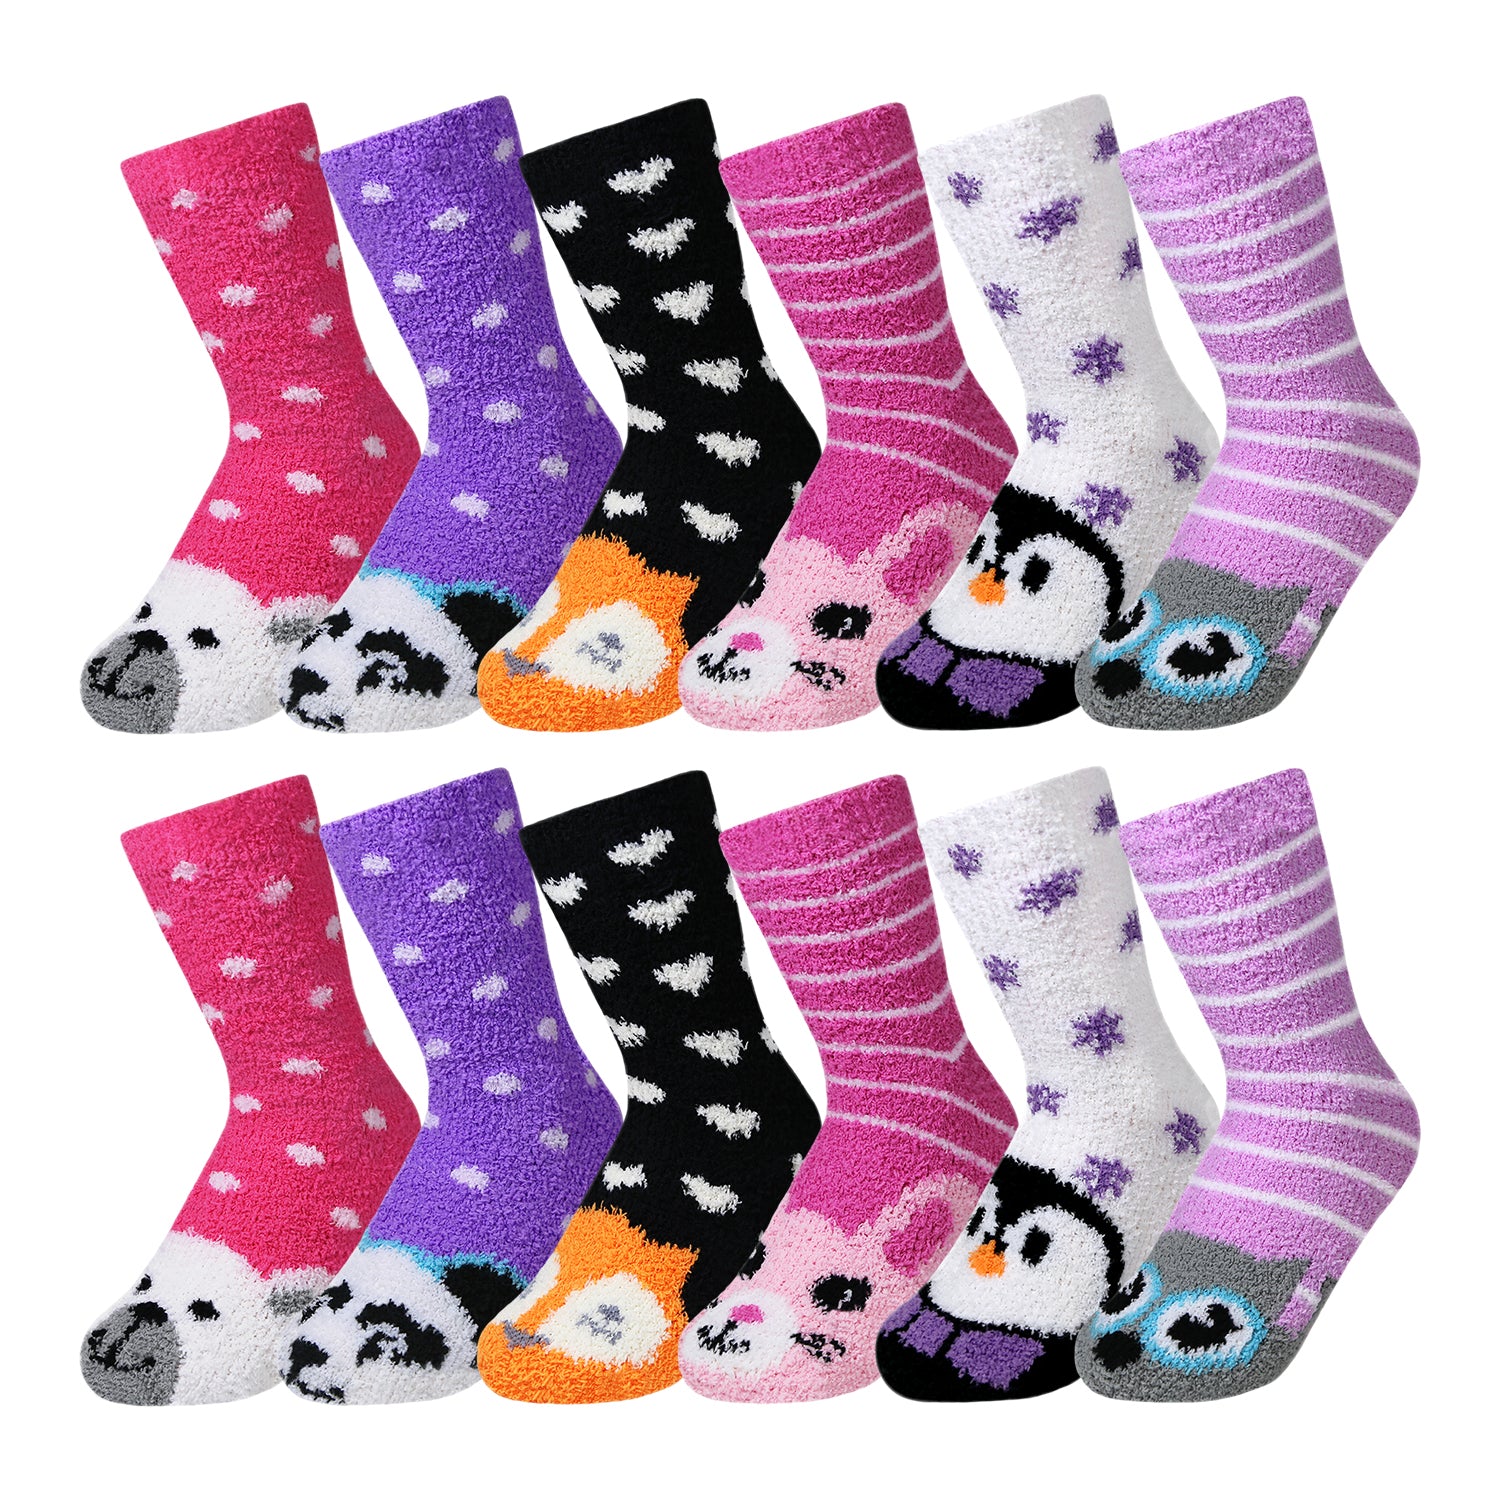 12 Pairs of Women's/Girl's Fuzzy Soft Plush Slipper Socks, Fluffy Wint –  Wholesale Diabetic Socks